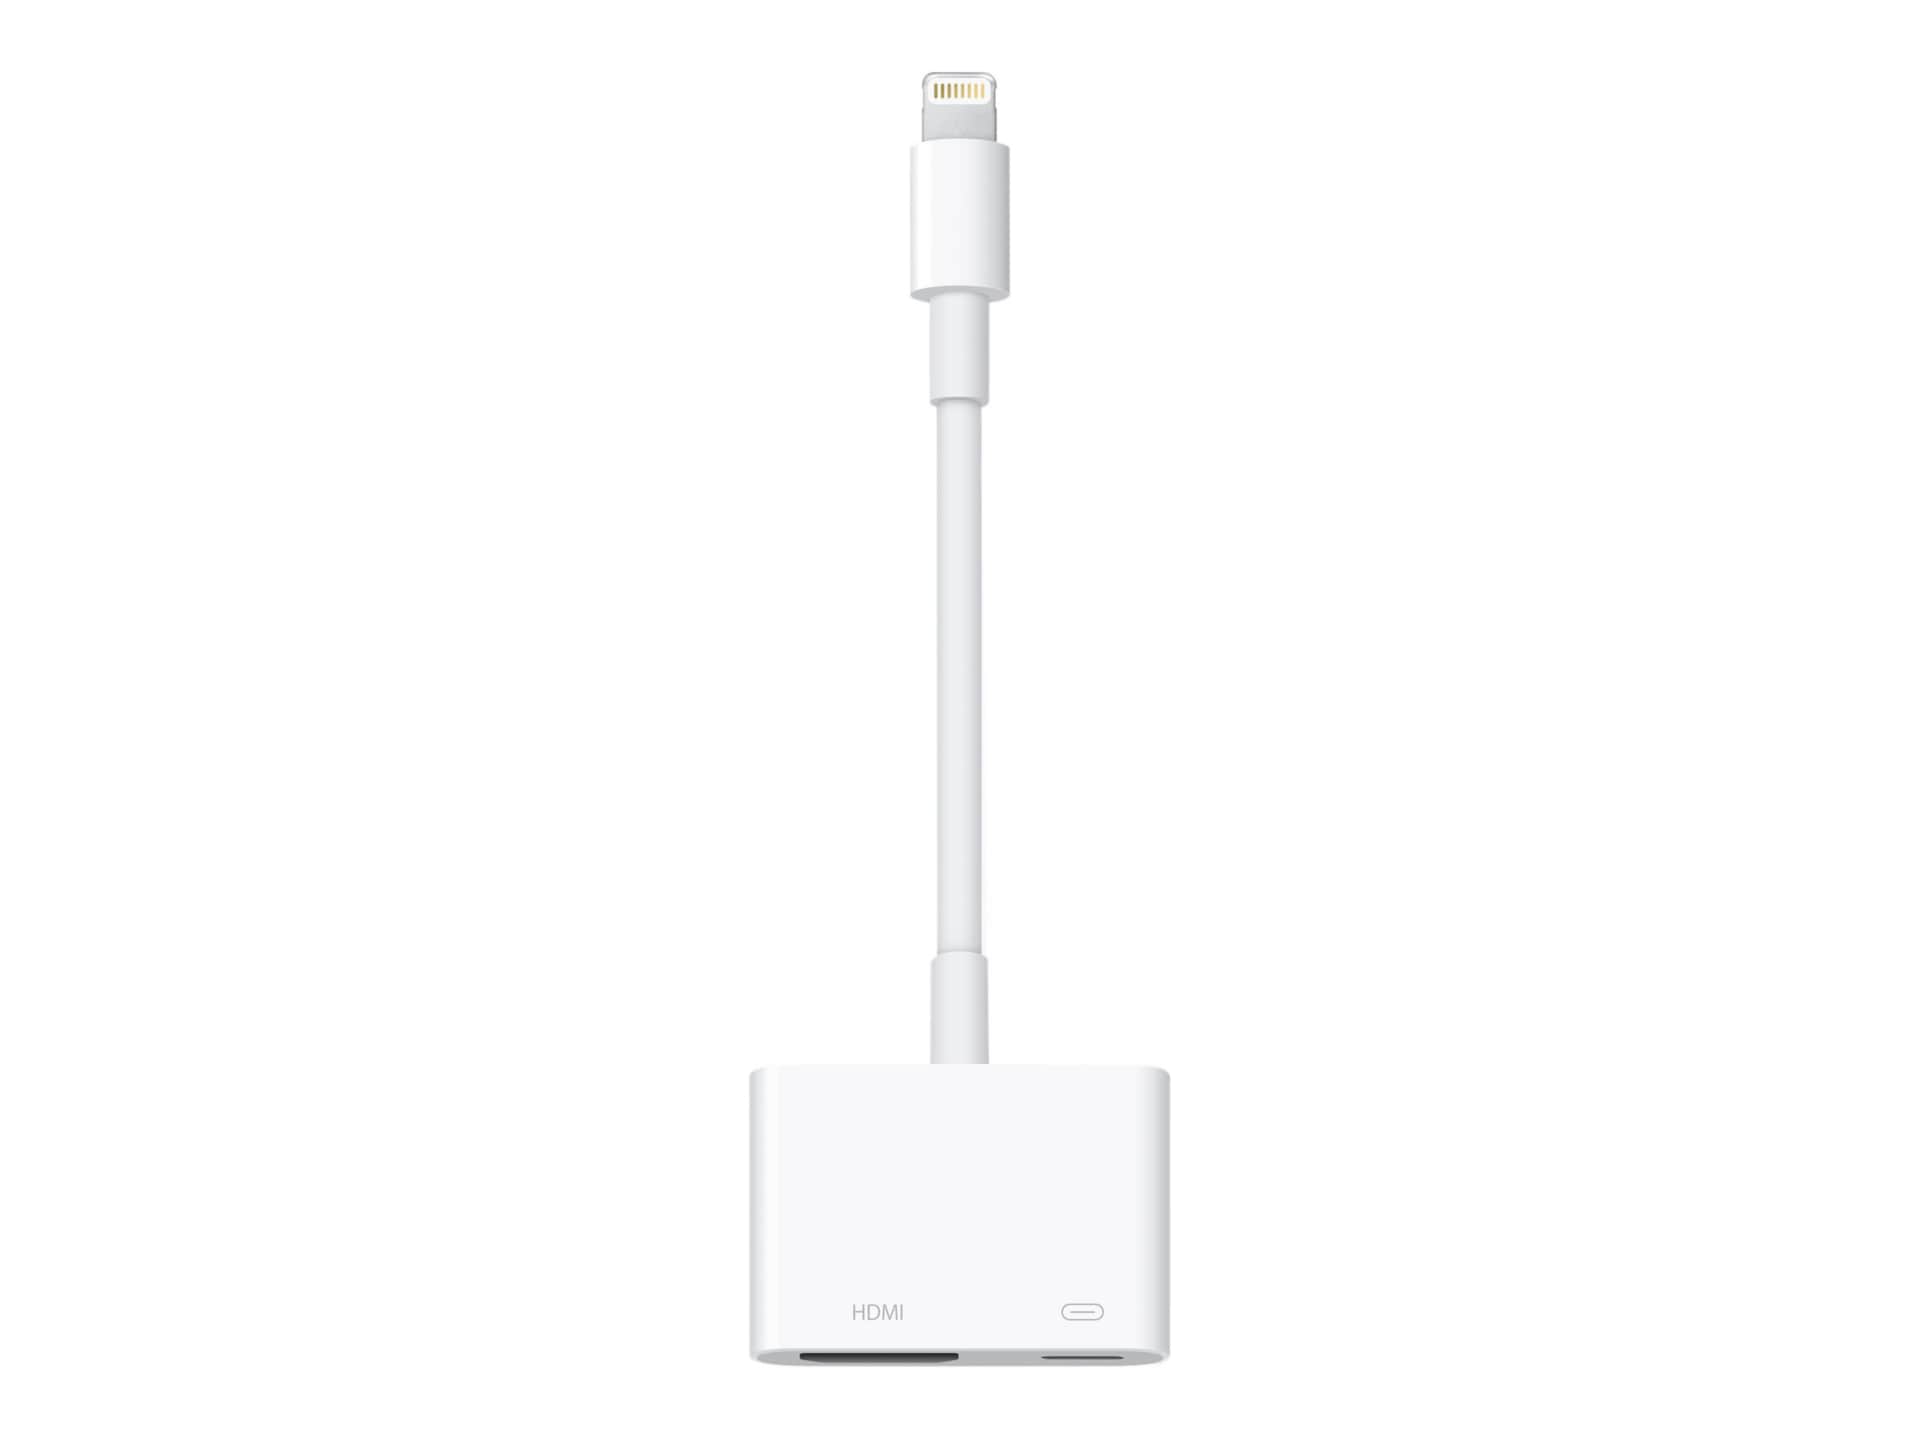 Apple Lightning Digital Adapter - Lightning HDMI adapter - HDMI / Lightning - MD826AM/A - Audio & Video Cables - CDW.com